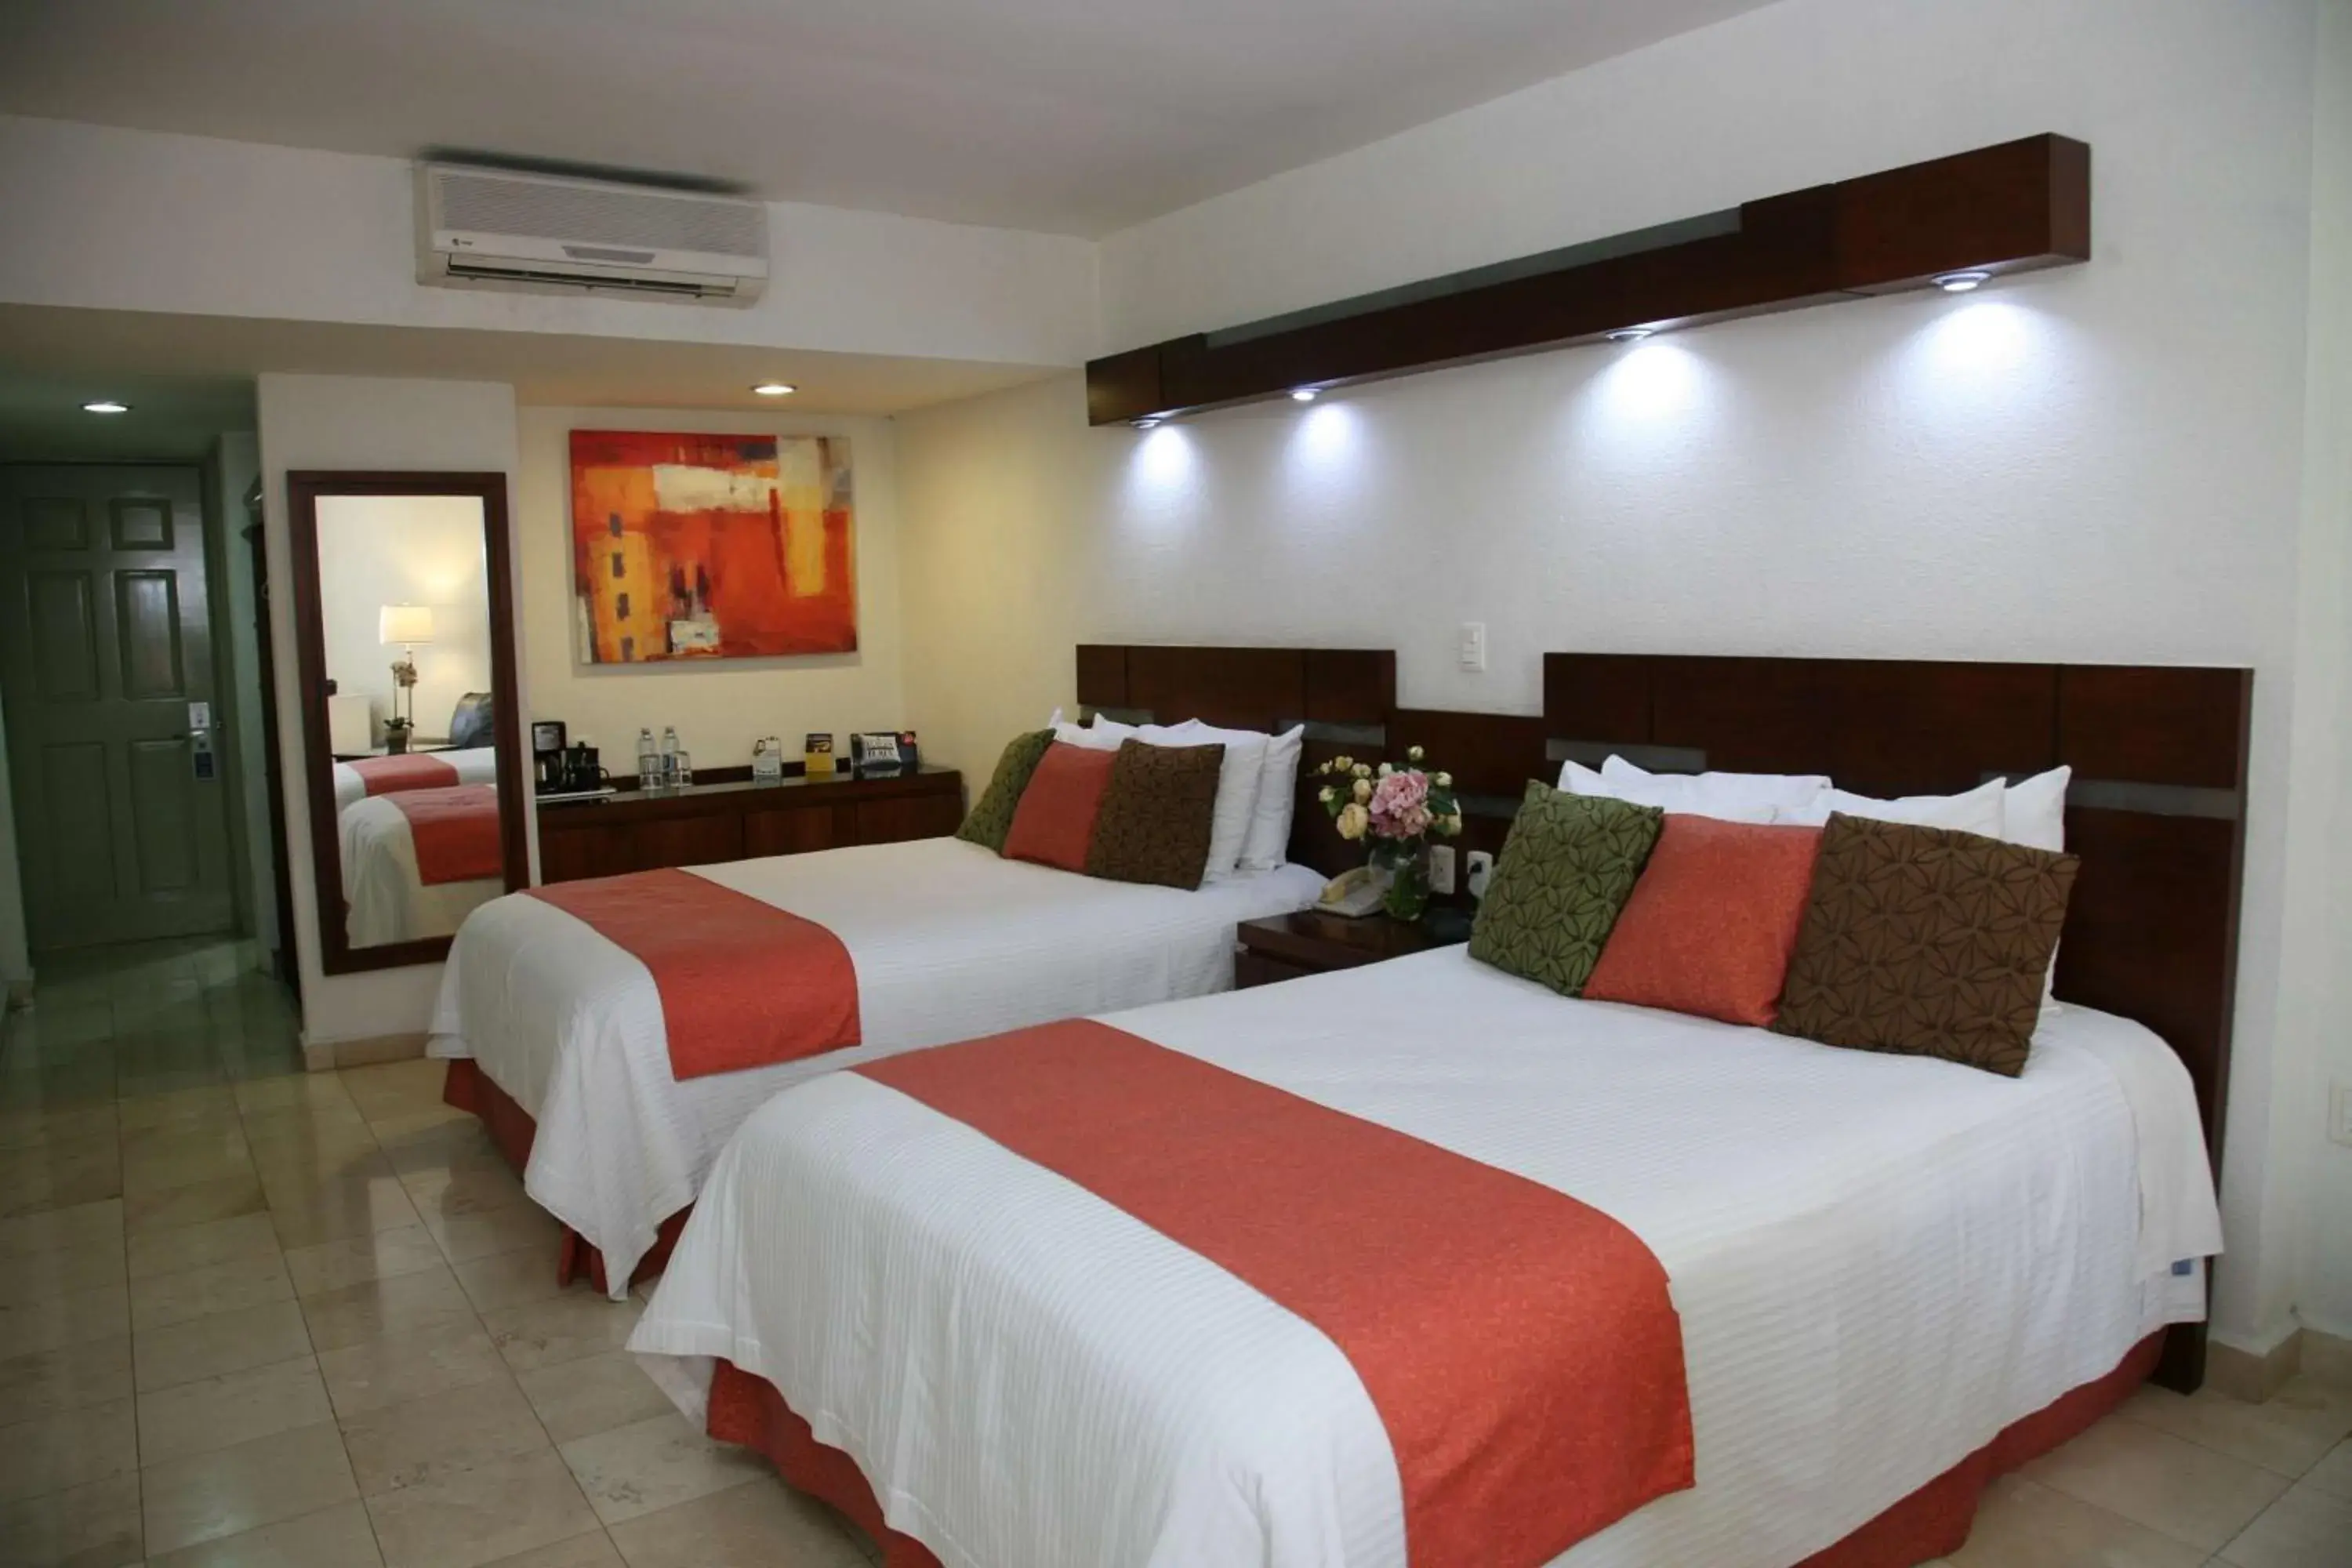 Standard Double Room in Hotel Poza Rica Centro